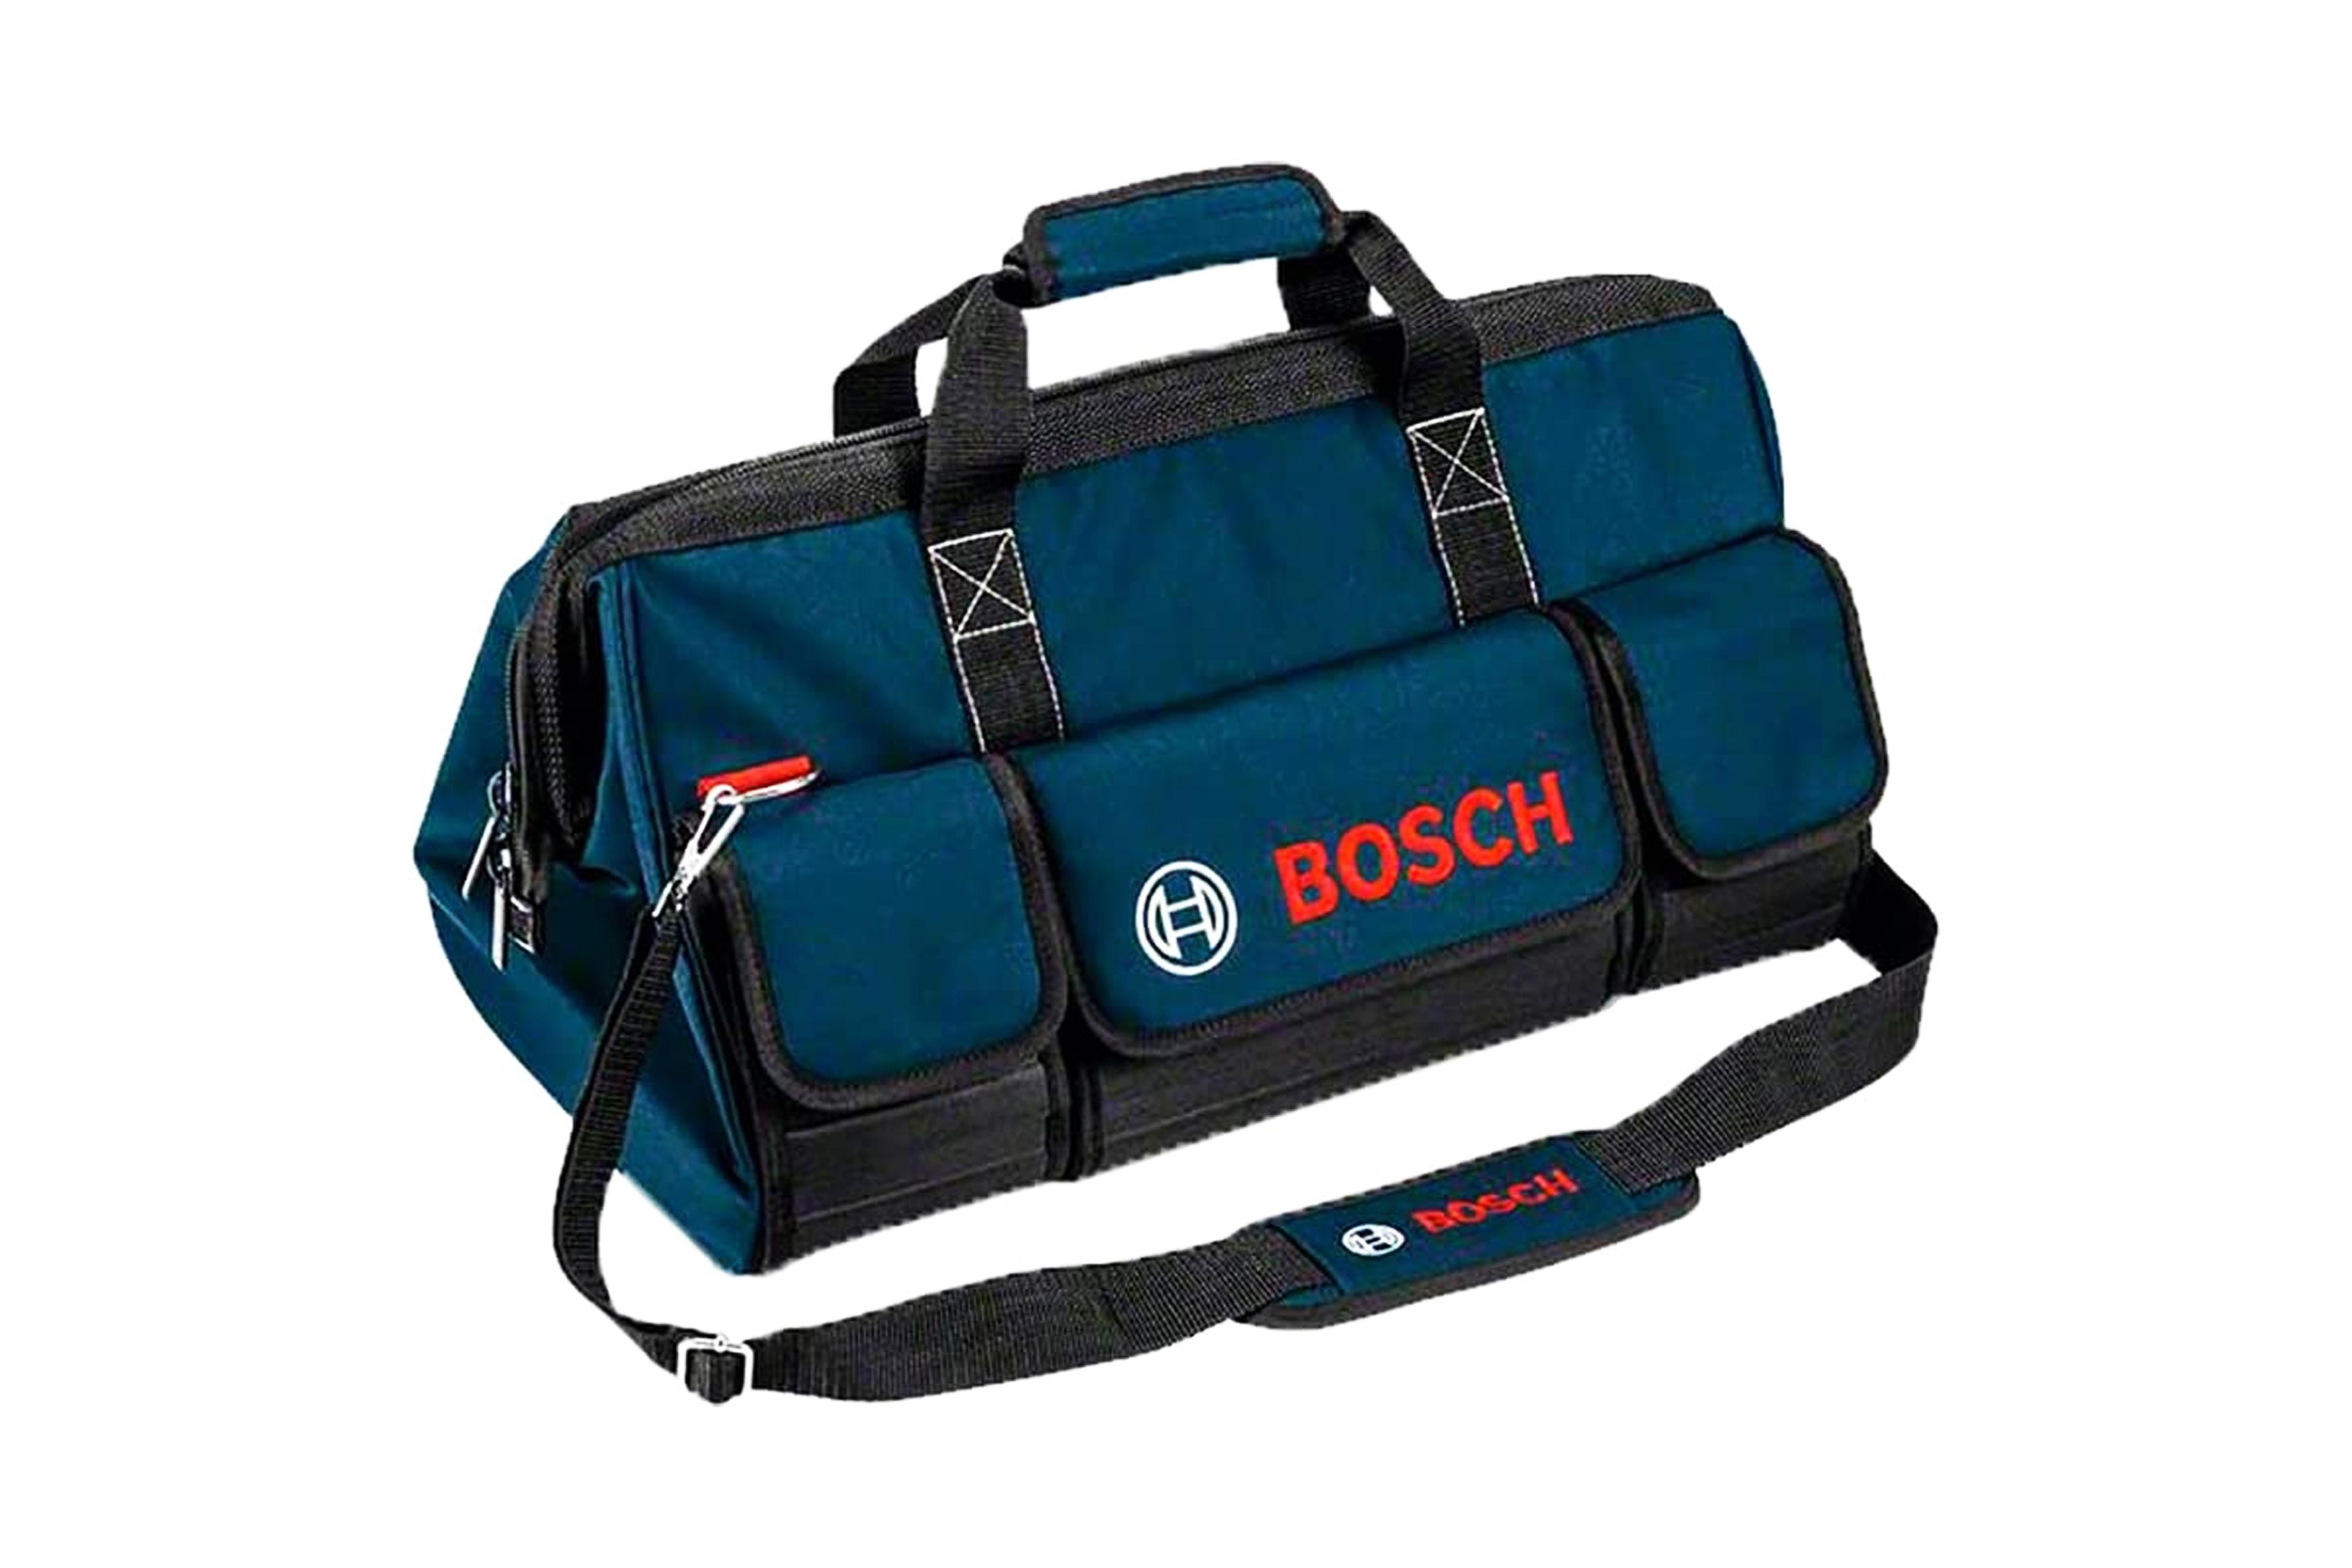 Bolsa de herramientas Bosch Mobility.jpg